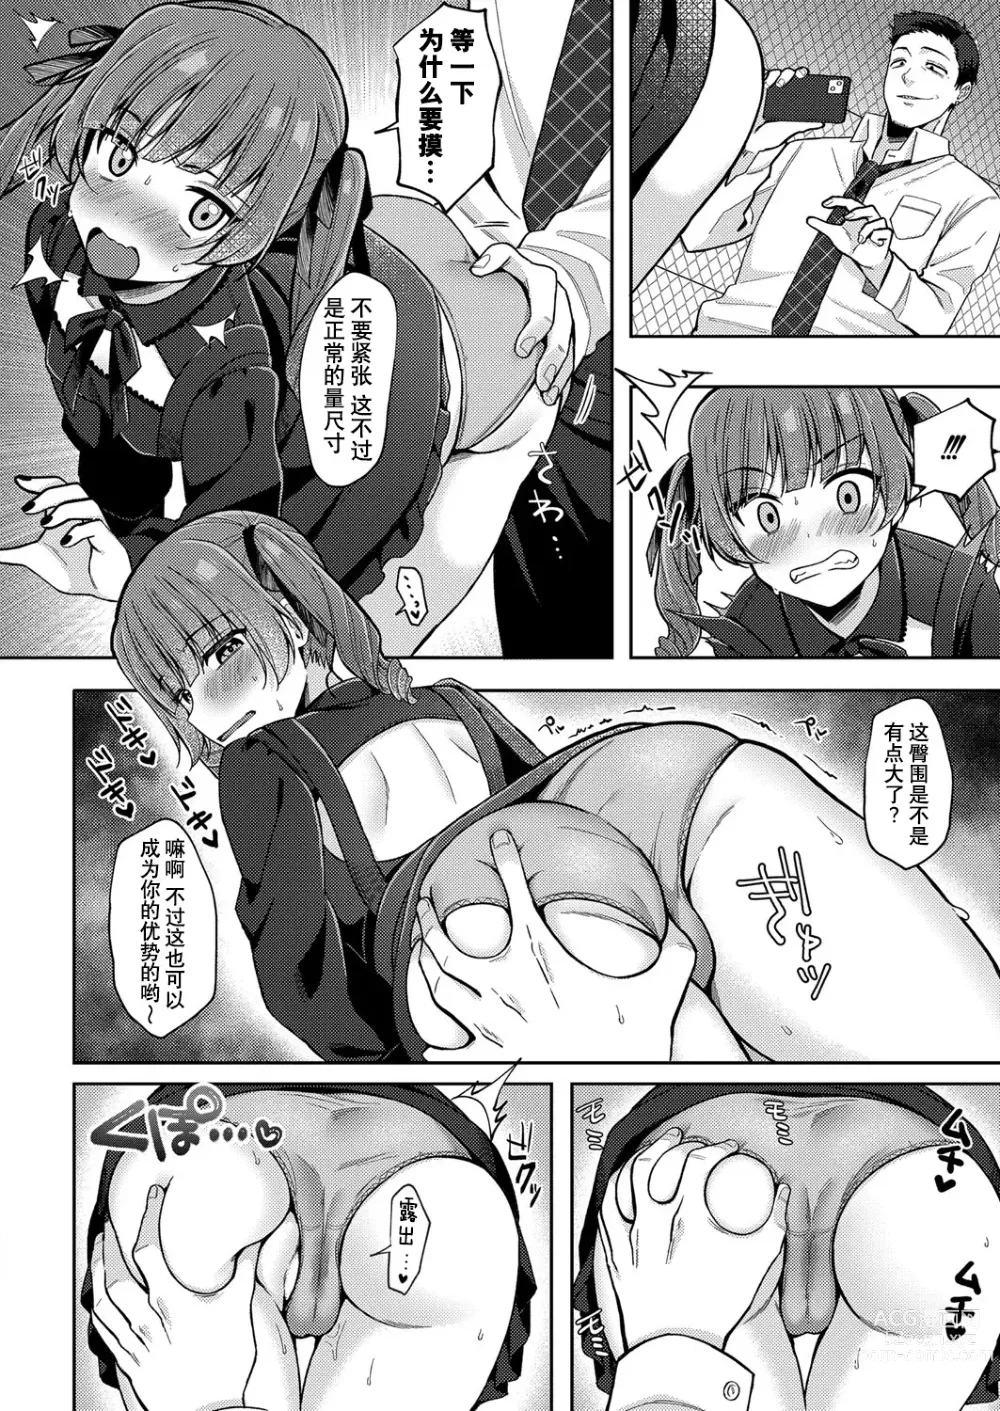 Page 12 of manga Yumemiru Masegaki ~Hatsudori Debut~